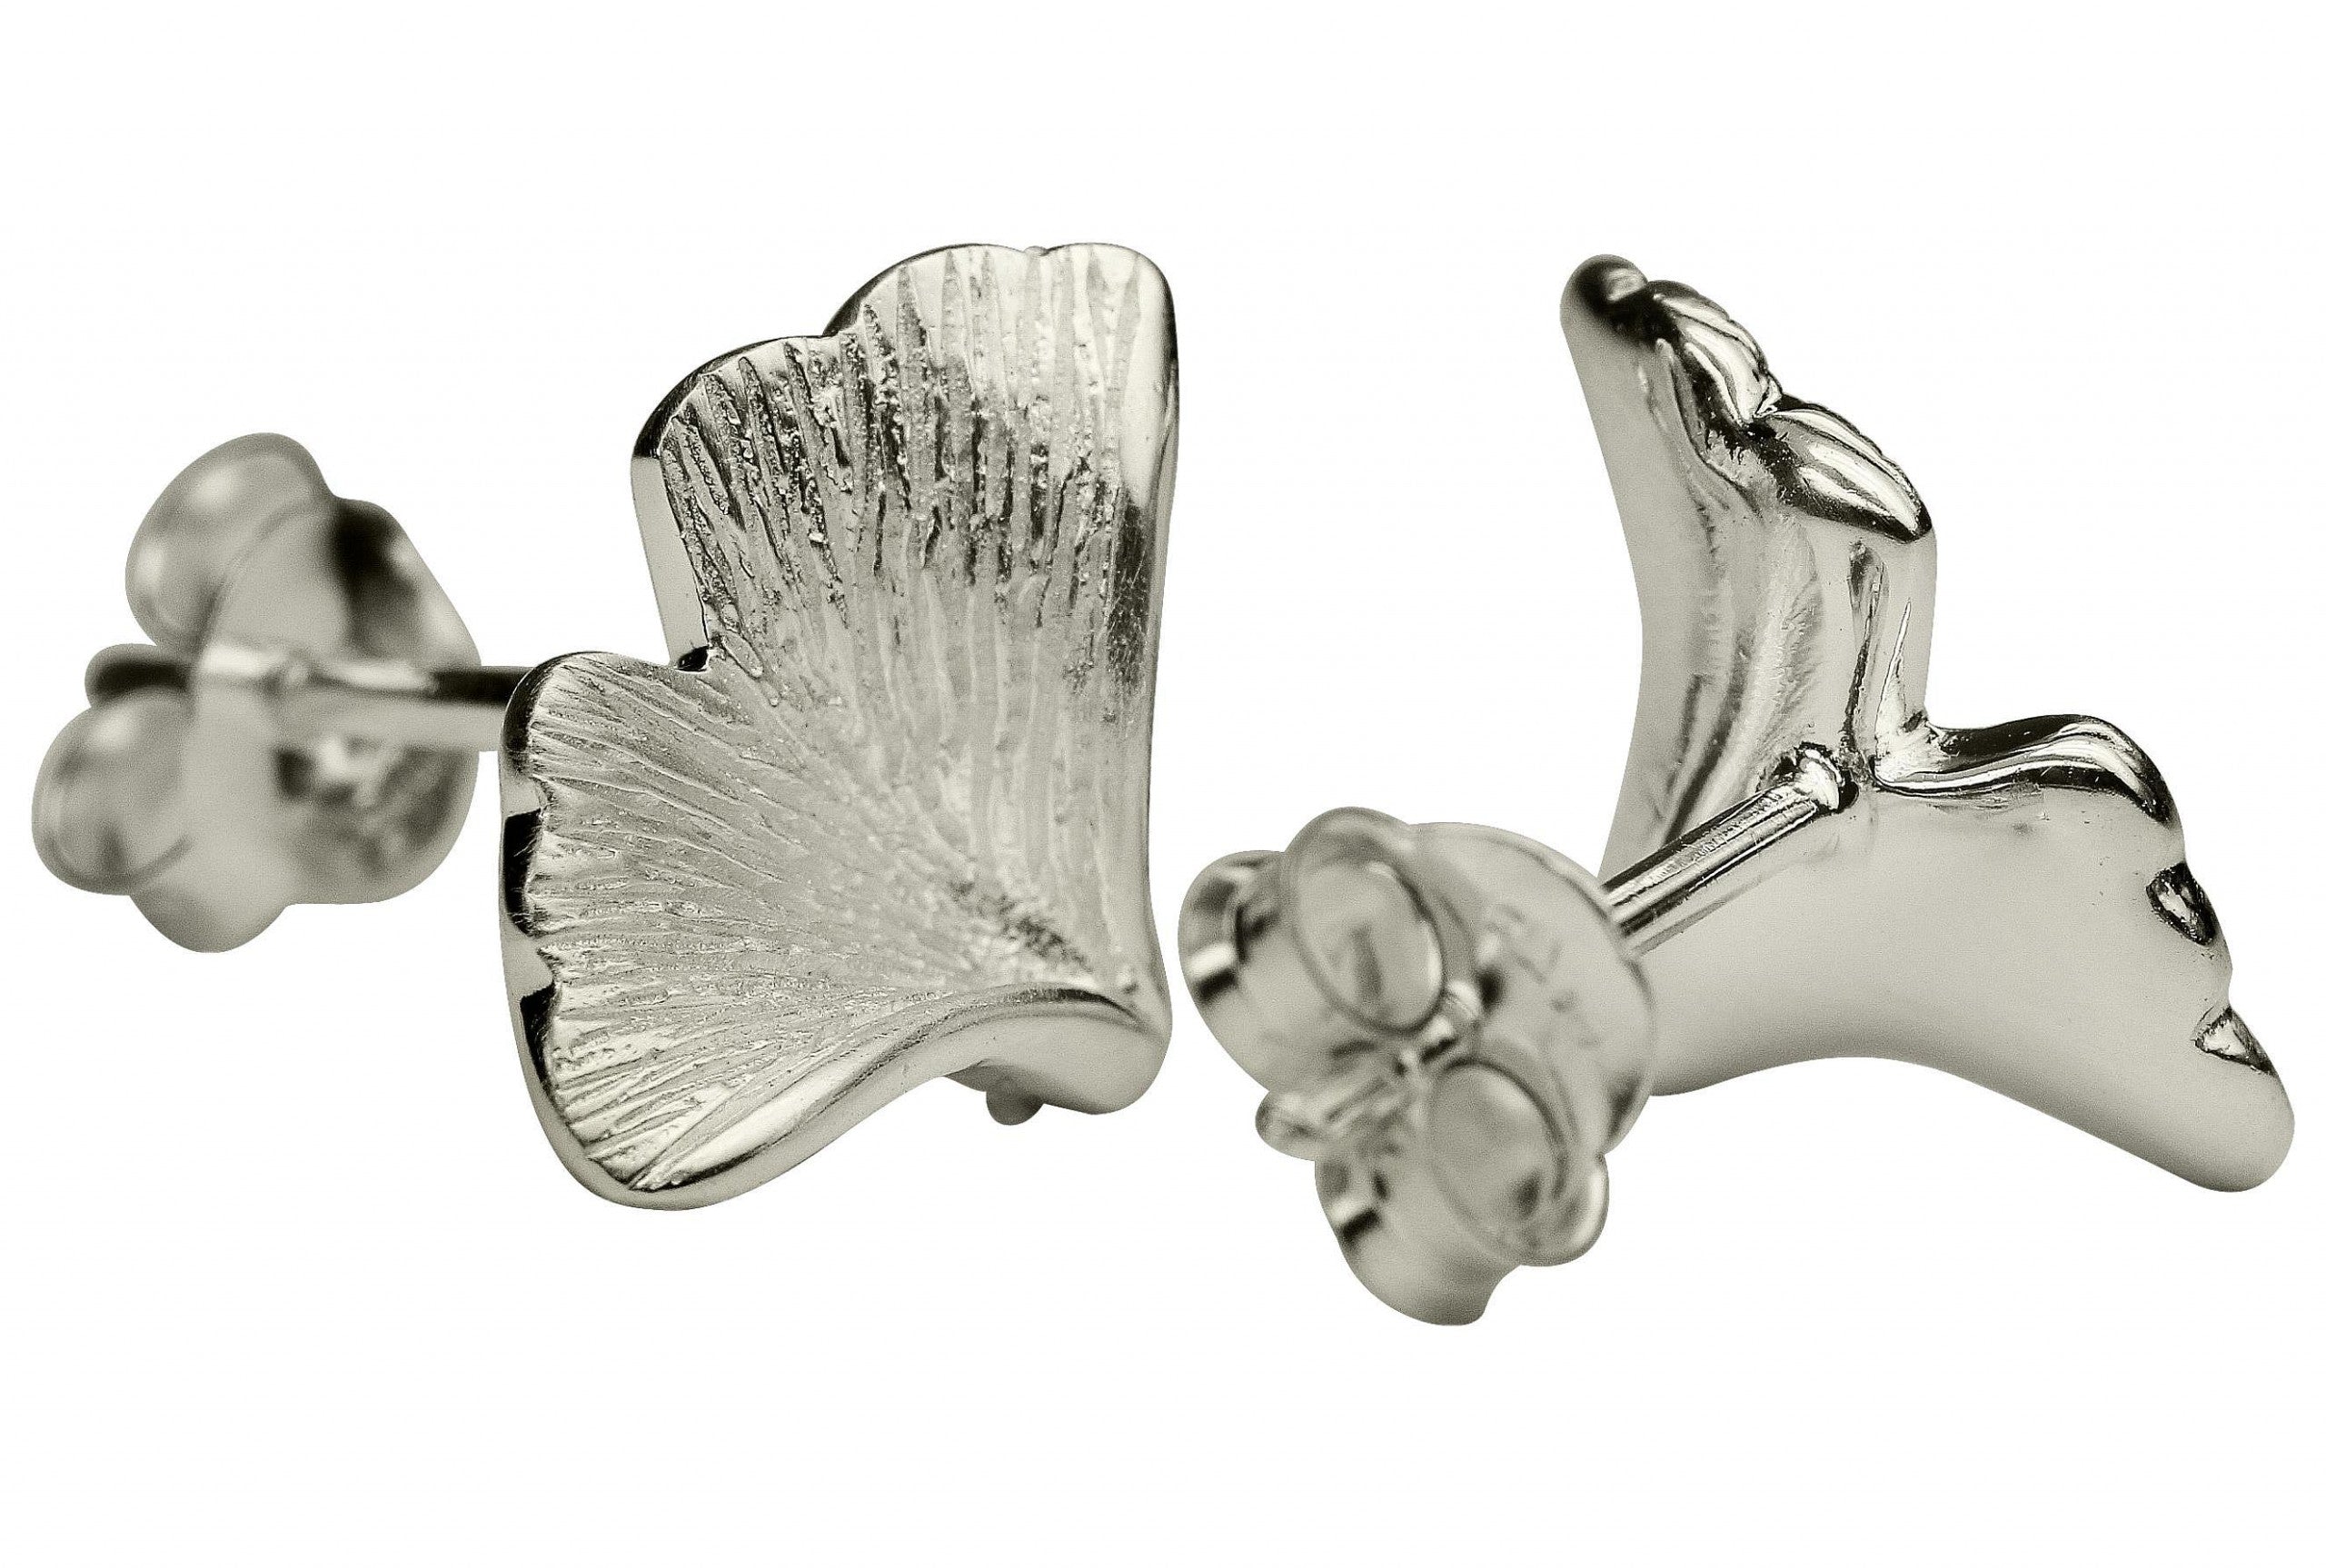 Ohrstecker aus Silber für Damen in Form eines Gingko Blattes mit fein mattierter Oberfläche.